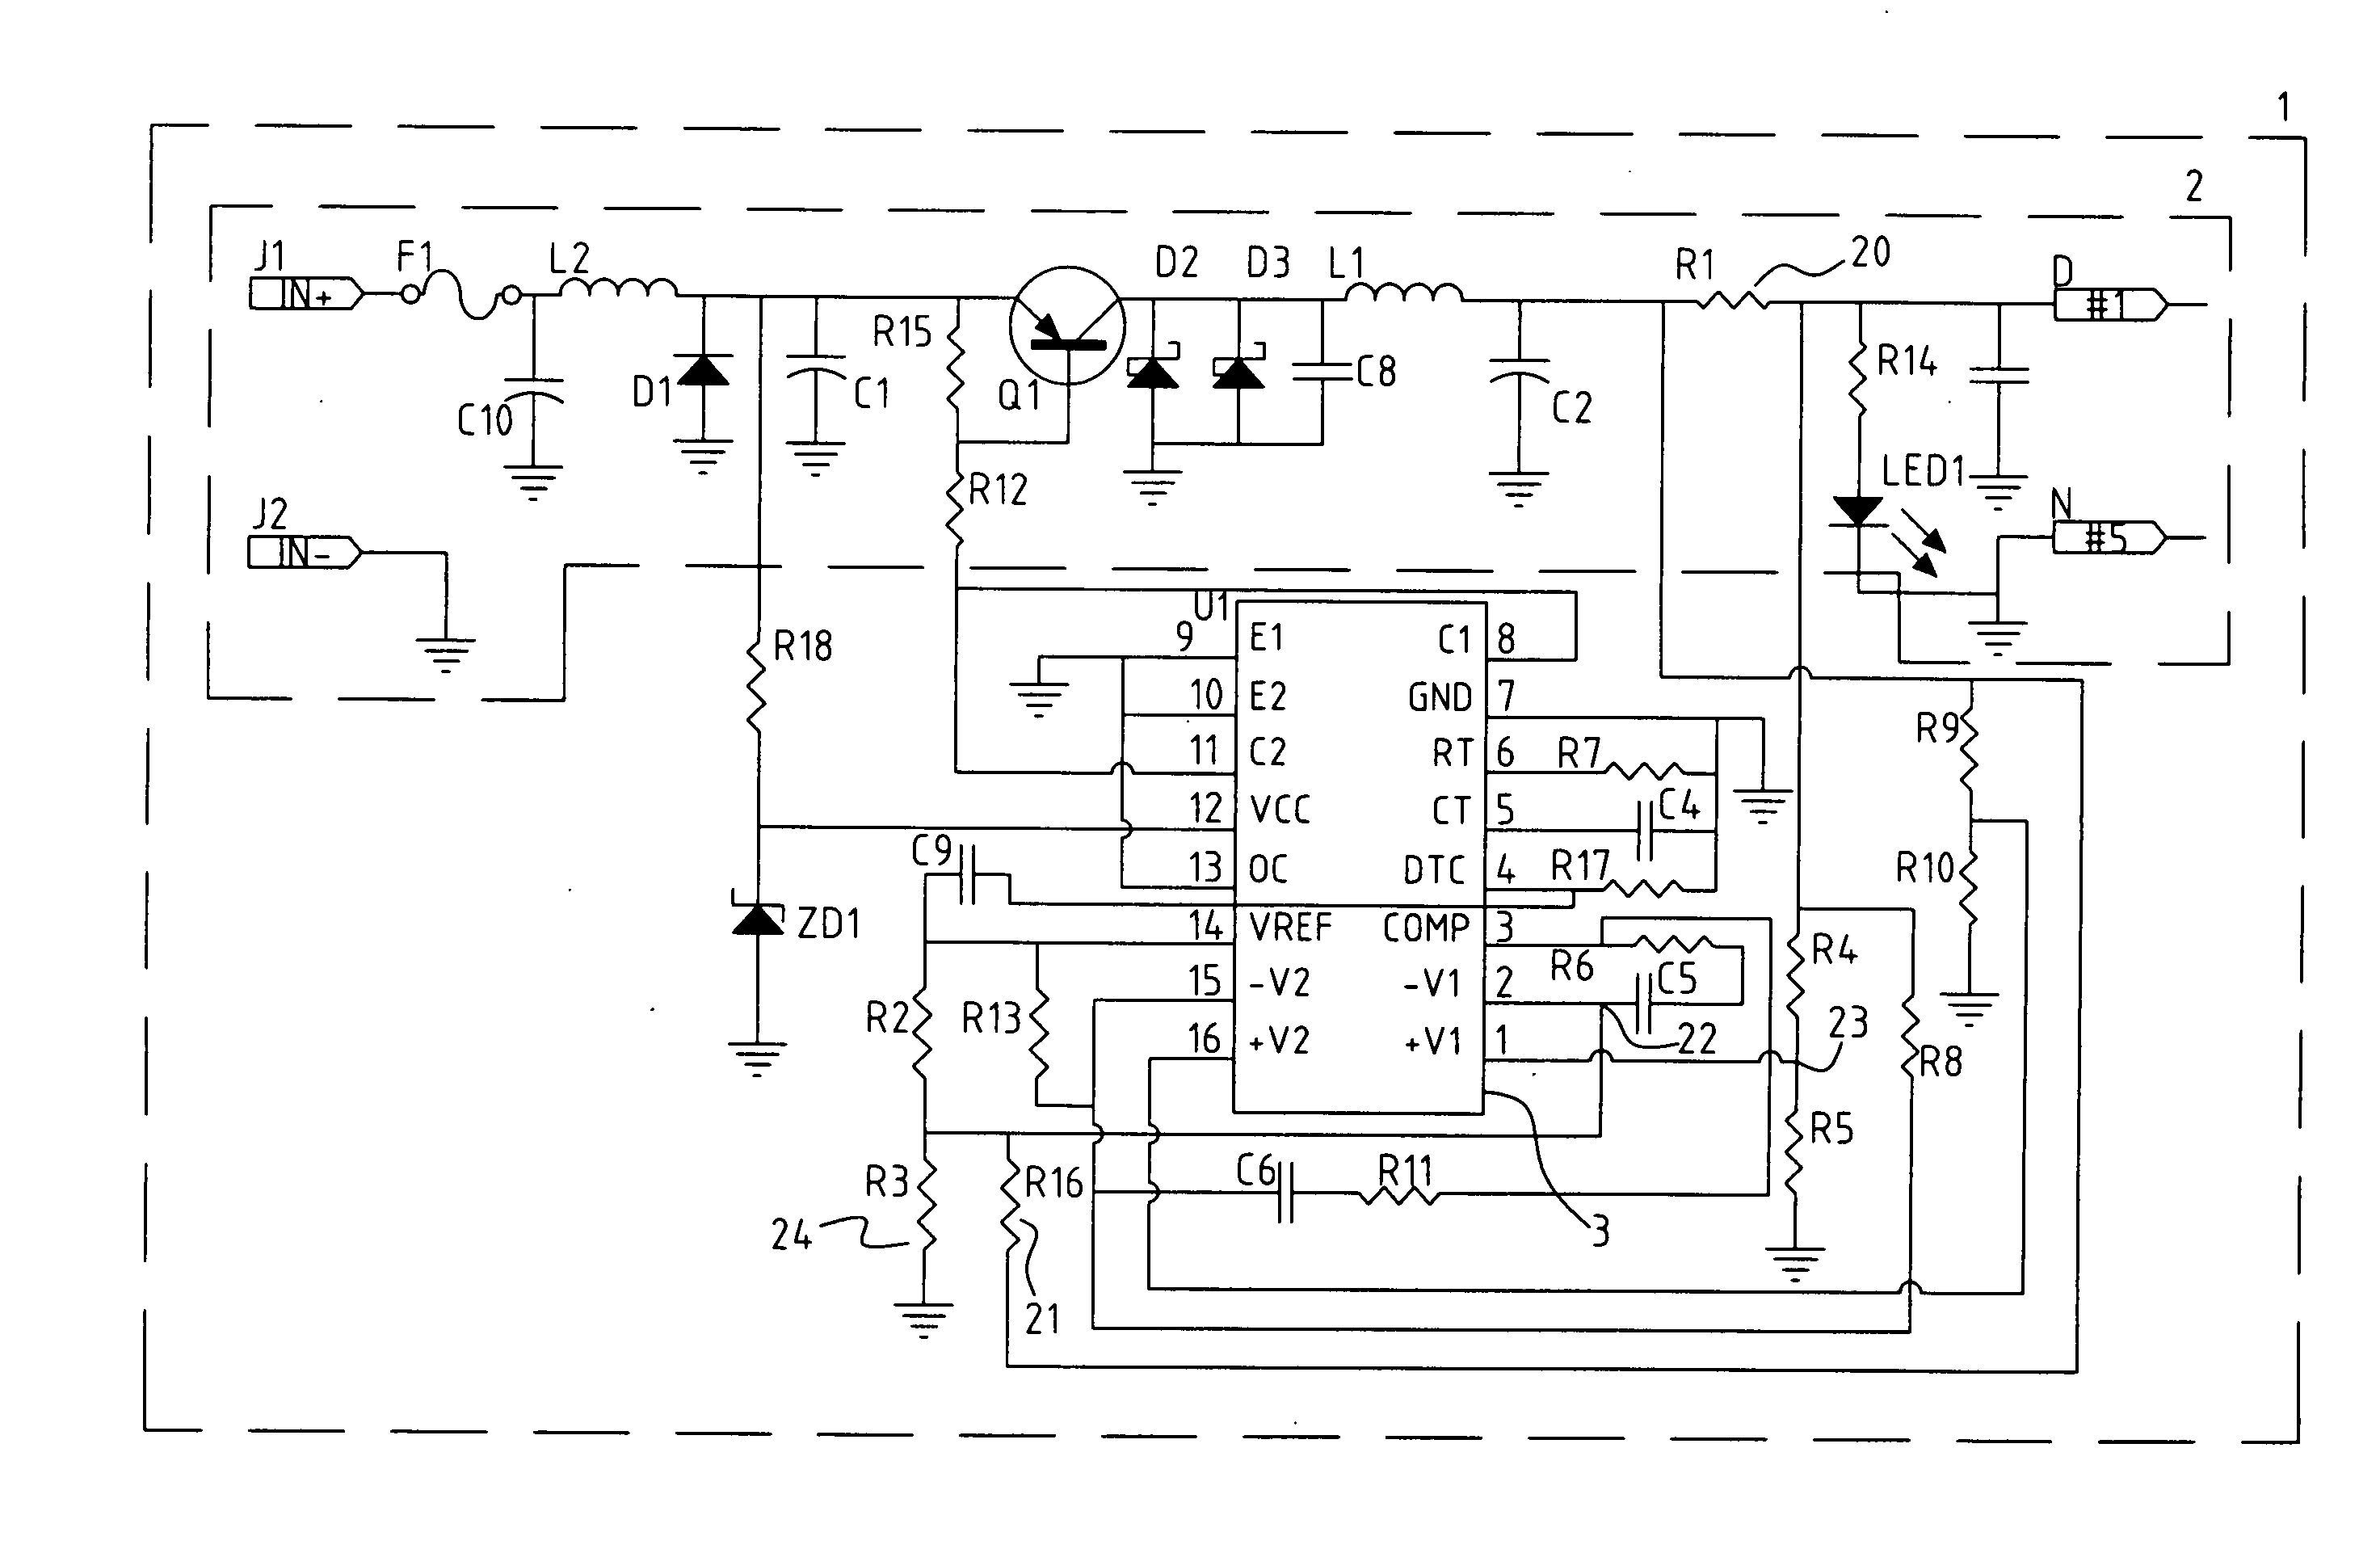 Output voltage compensation device